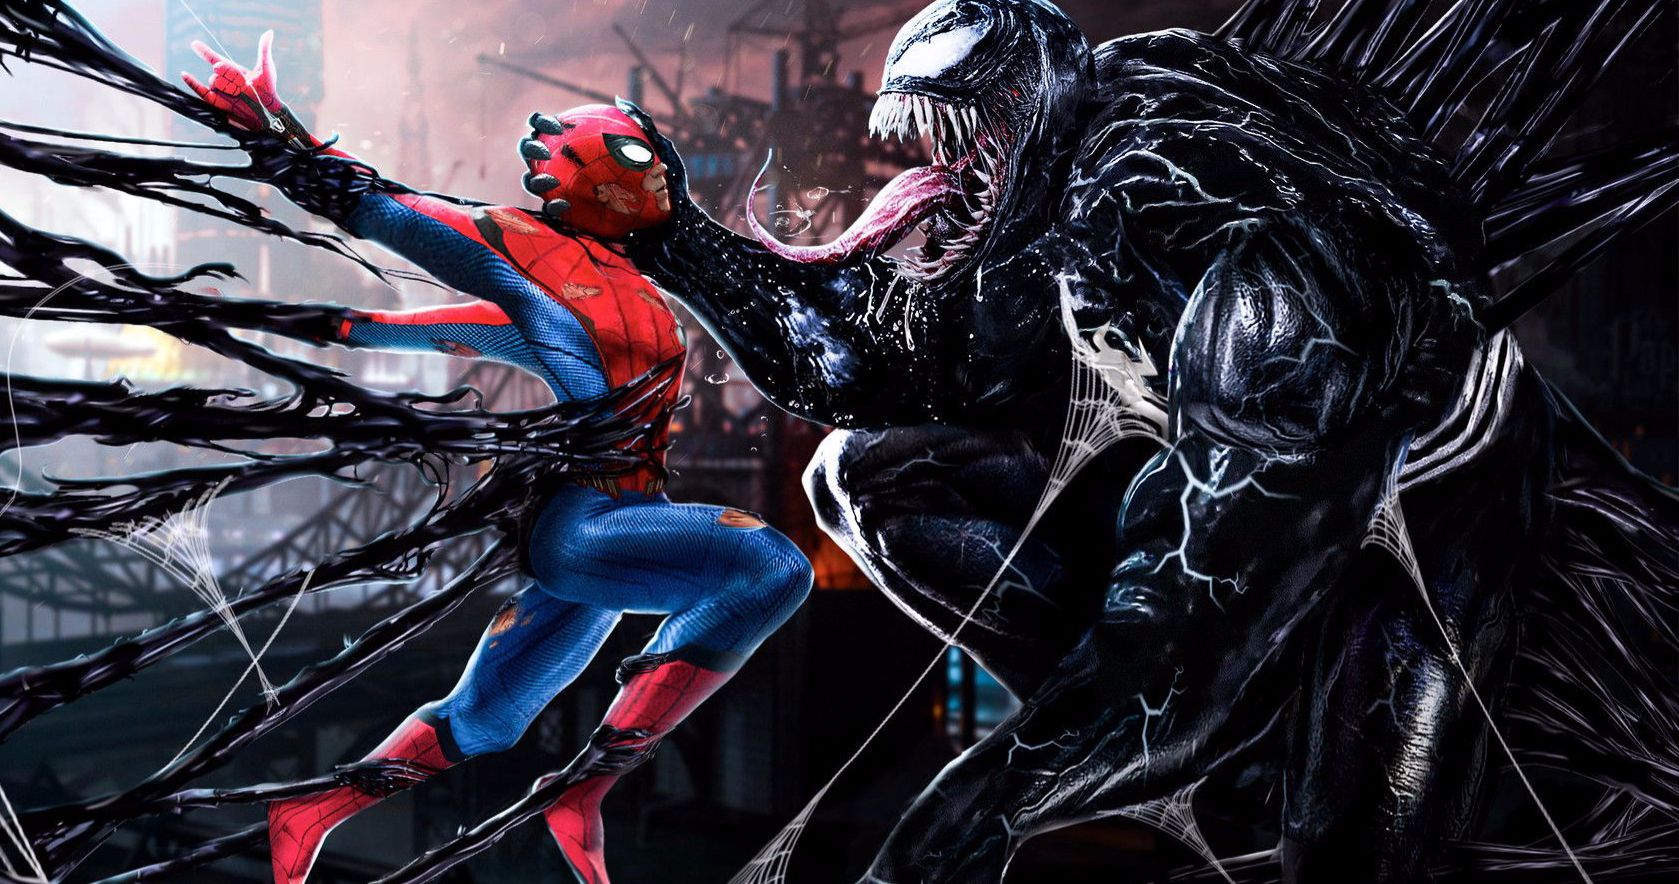 Venom Devours Spider-Man in New Fan Art